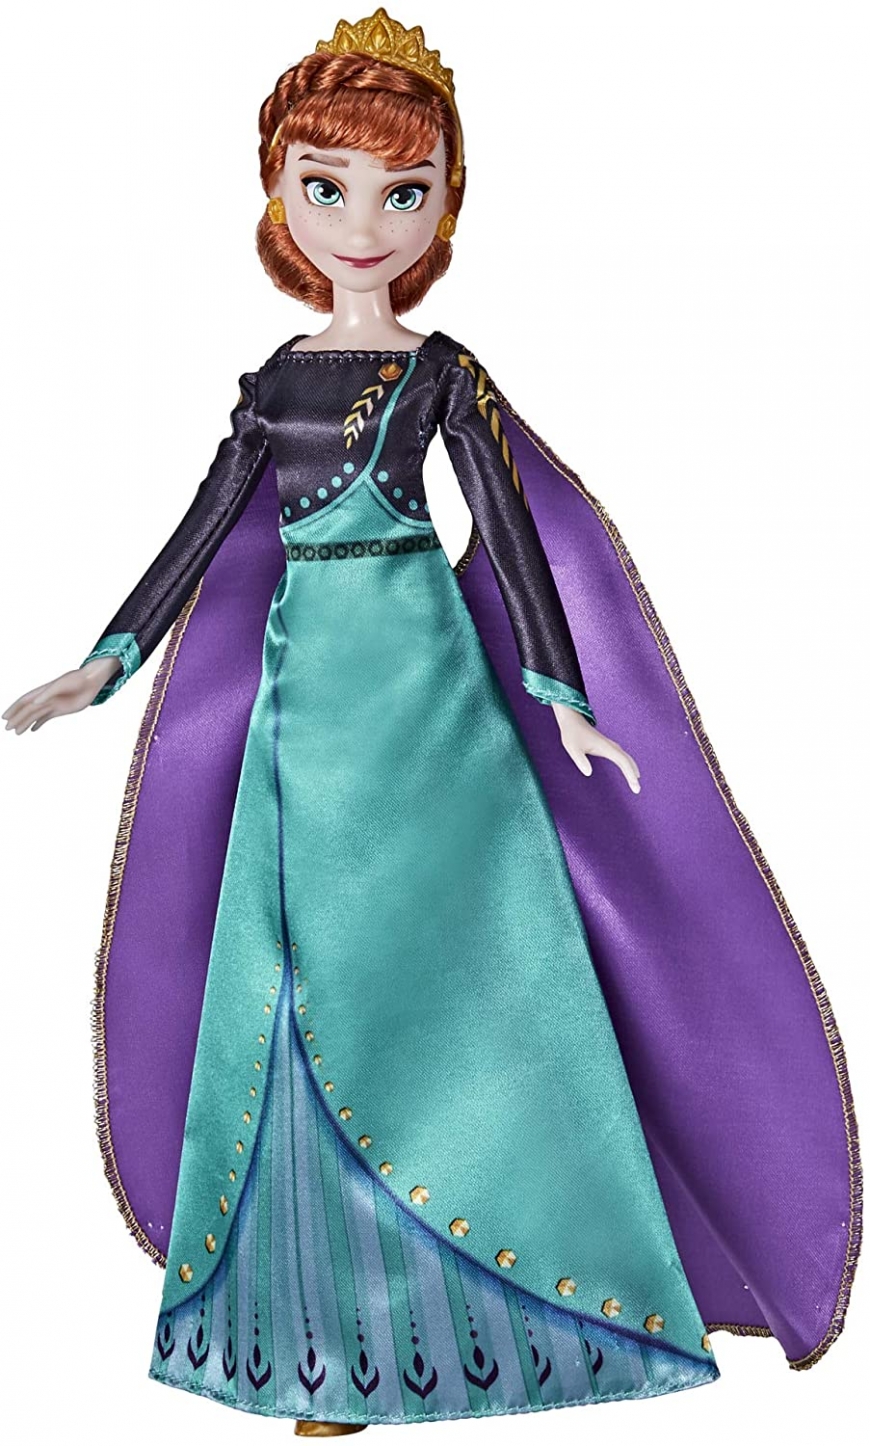 Frozen 2 Queen Anna Fashion doll